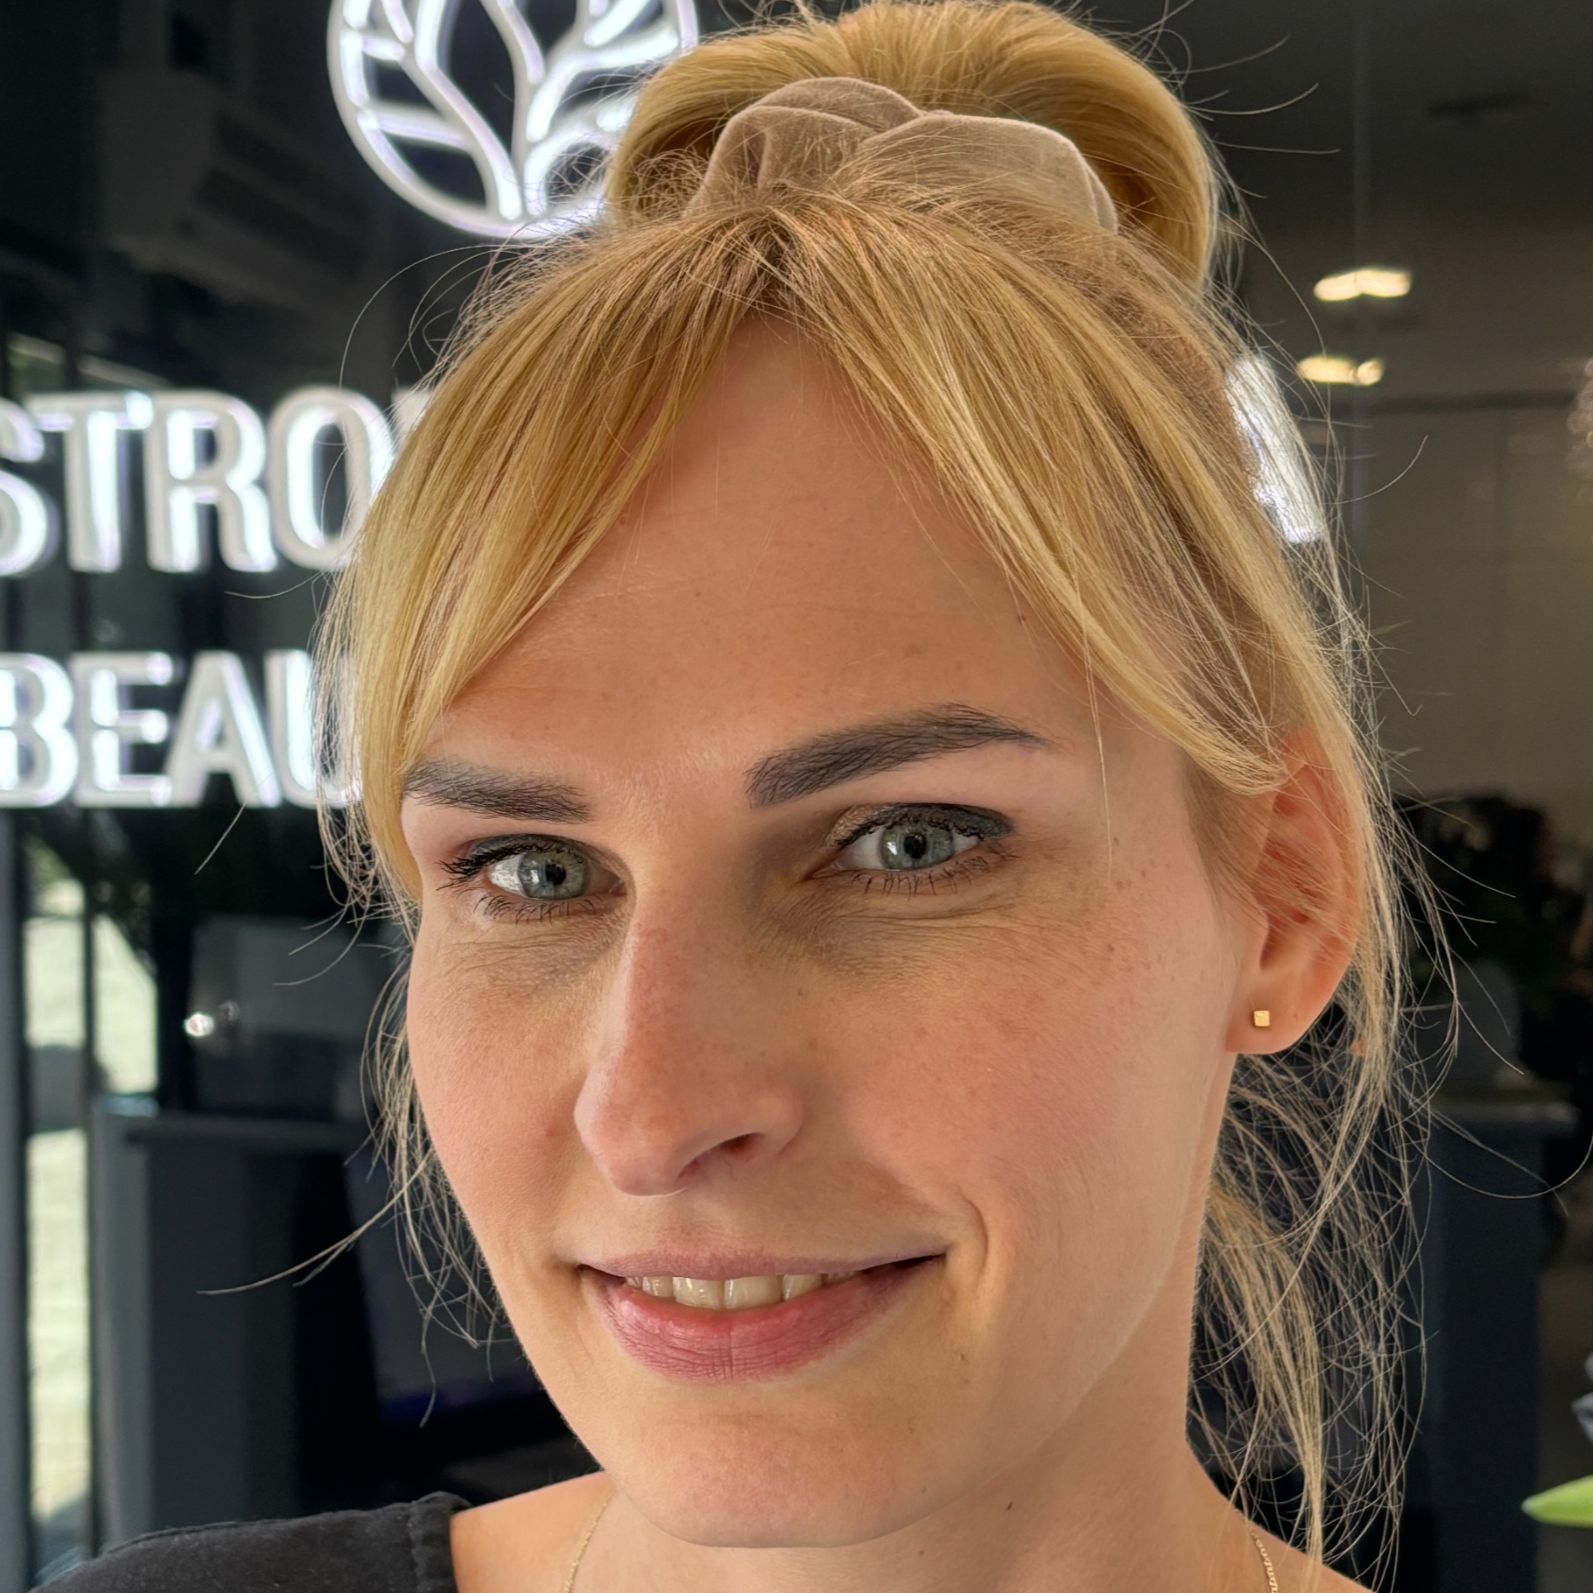 Joanna Kosmetolog - Ostrobramska Beauty Clinic